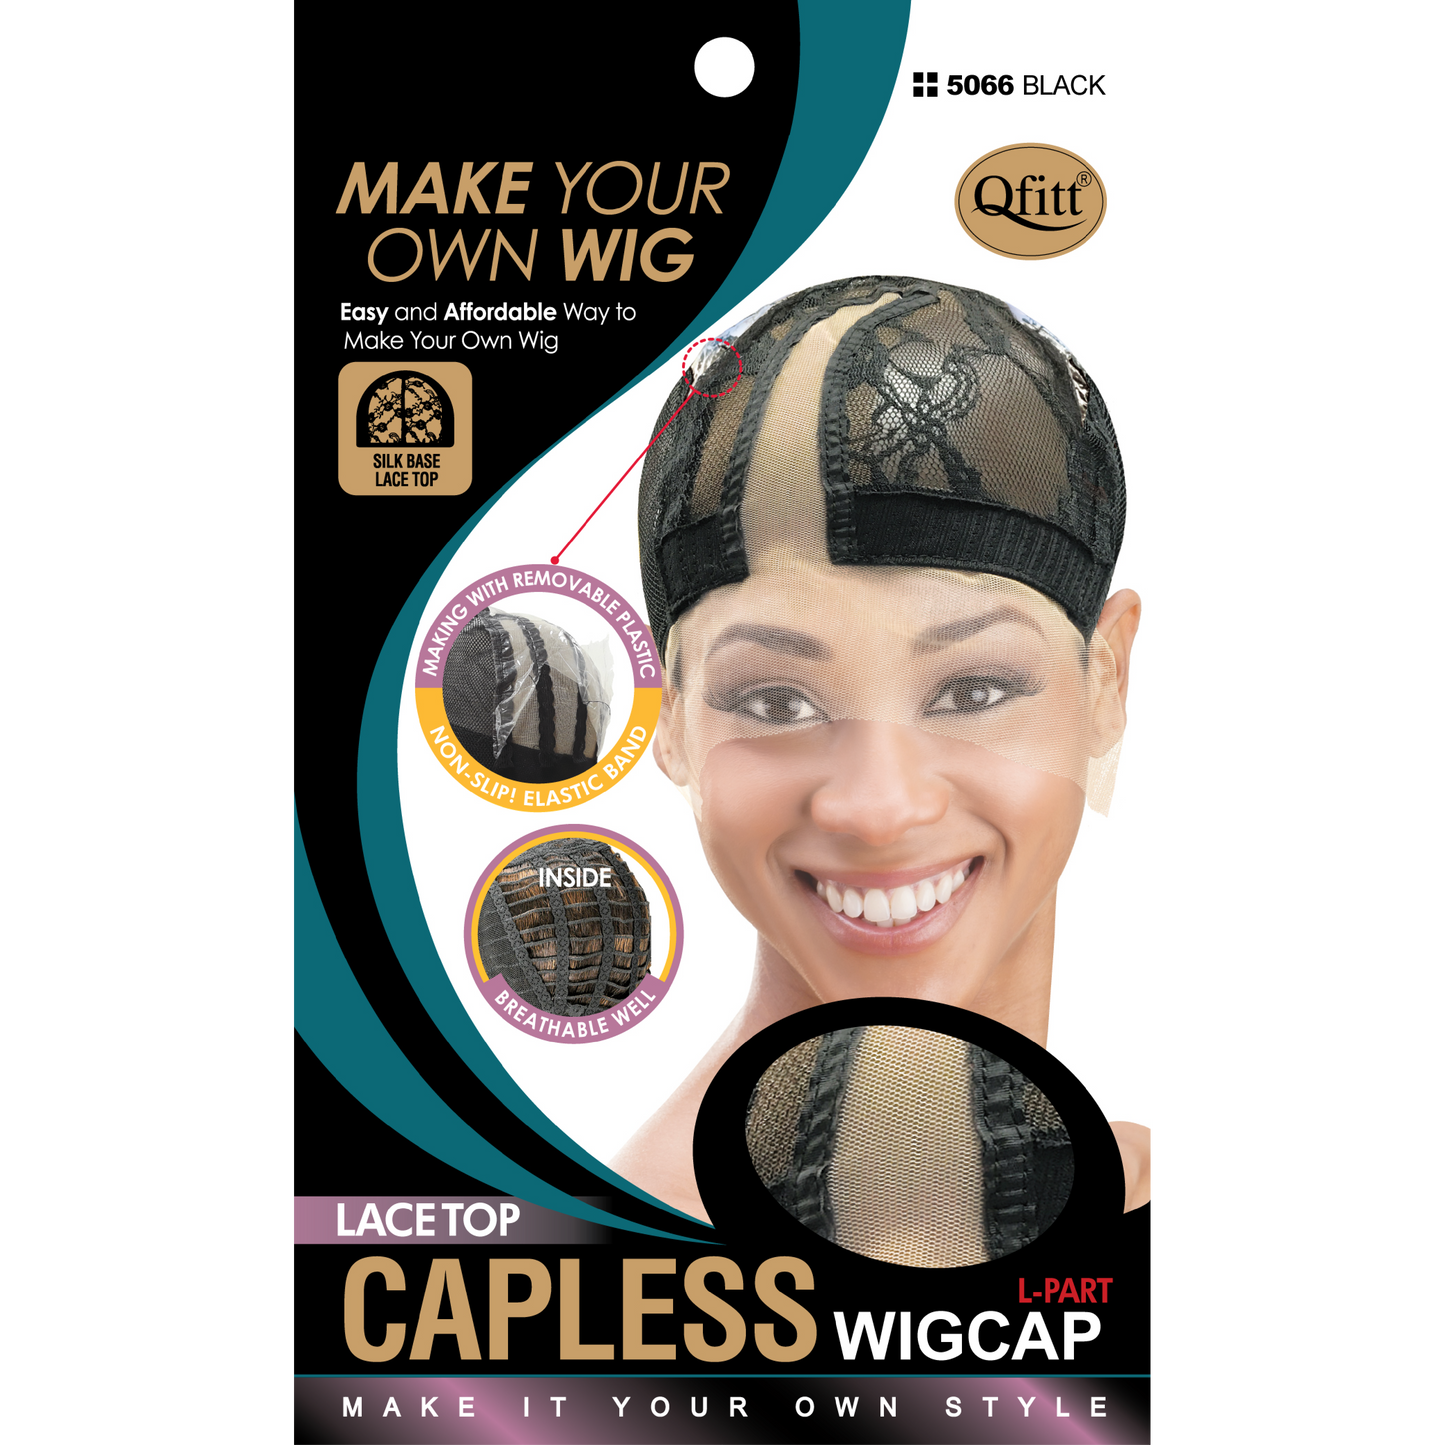 CAPLESS WIG CAP